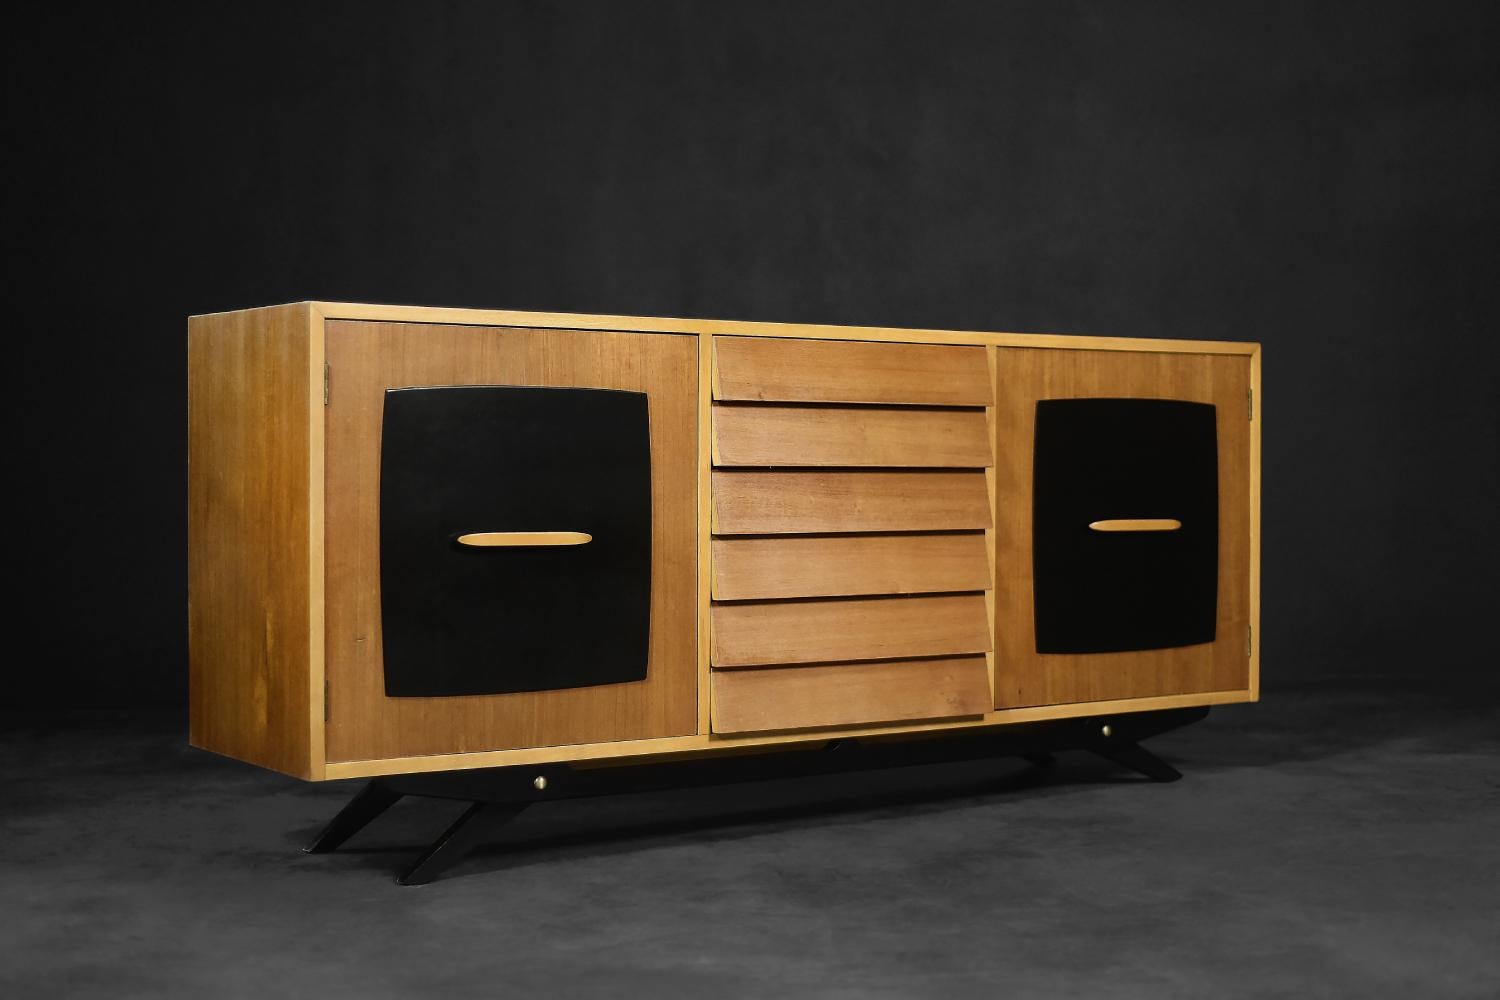 Ce buffet moderniste a été conçu par Gillis Lundgren pour l'entreprise suédoise Ikea en 1955. Le meuble fait partie de la série Forum, apparue dans le catalogue de l'entreprise en 1956. Le buffet est fabriqué en bois de teck dans un ton chaud de